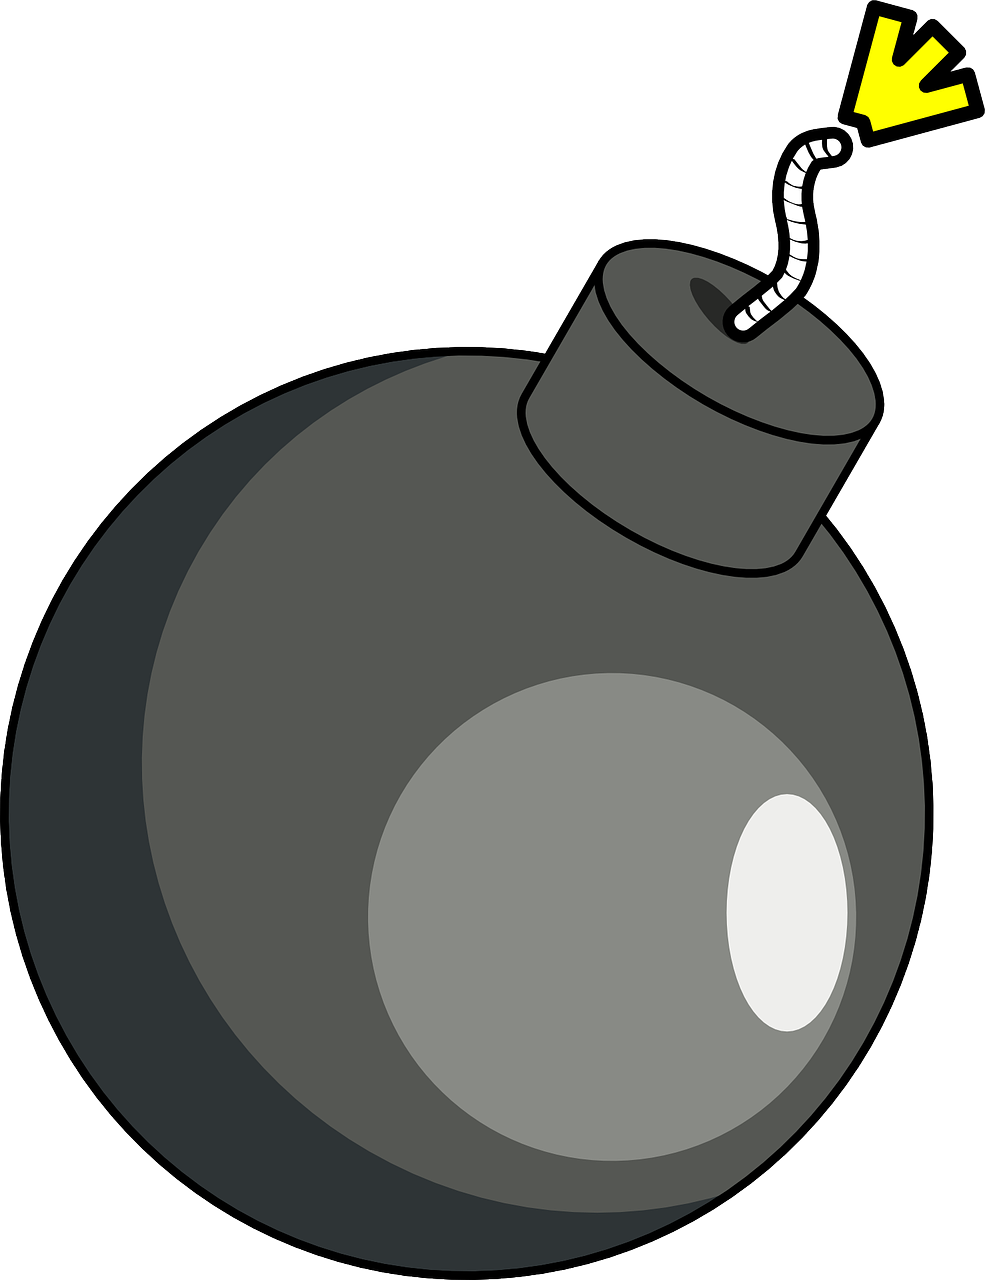 Bomb Clip Art Free - Bomb Clip Art